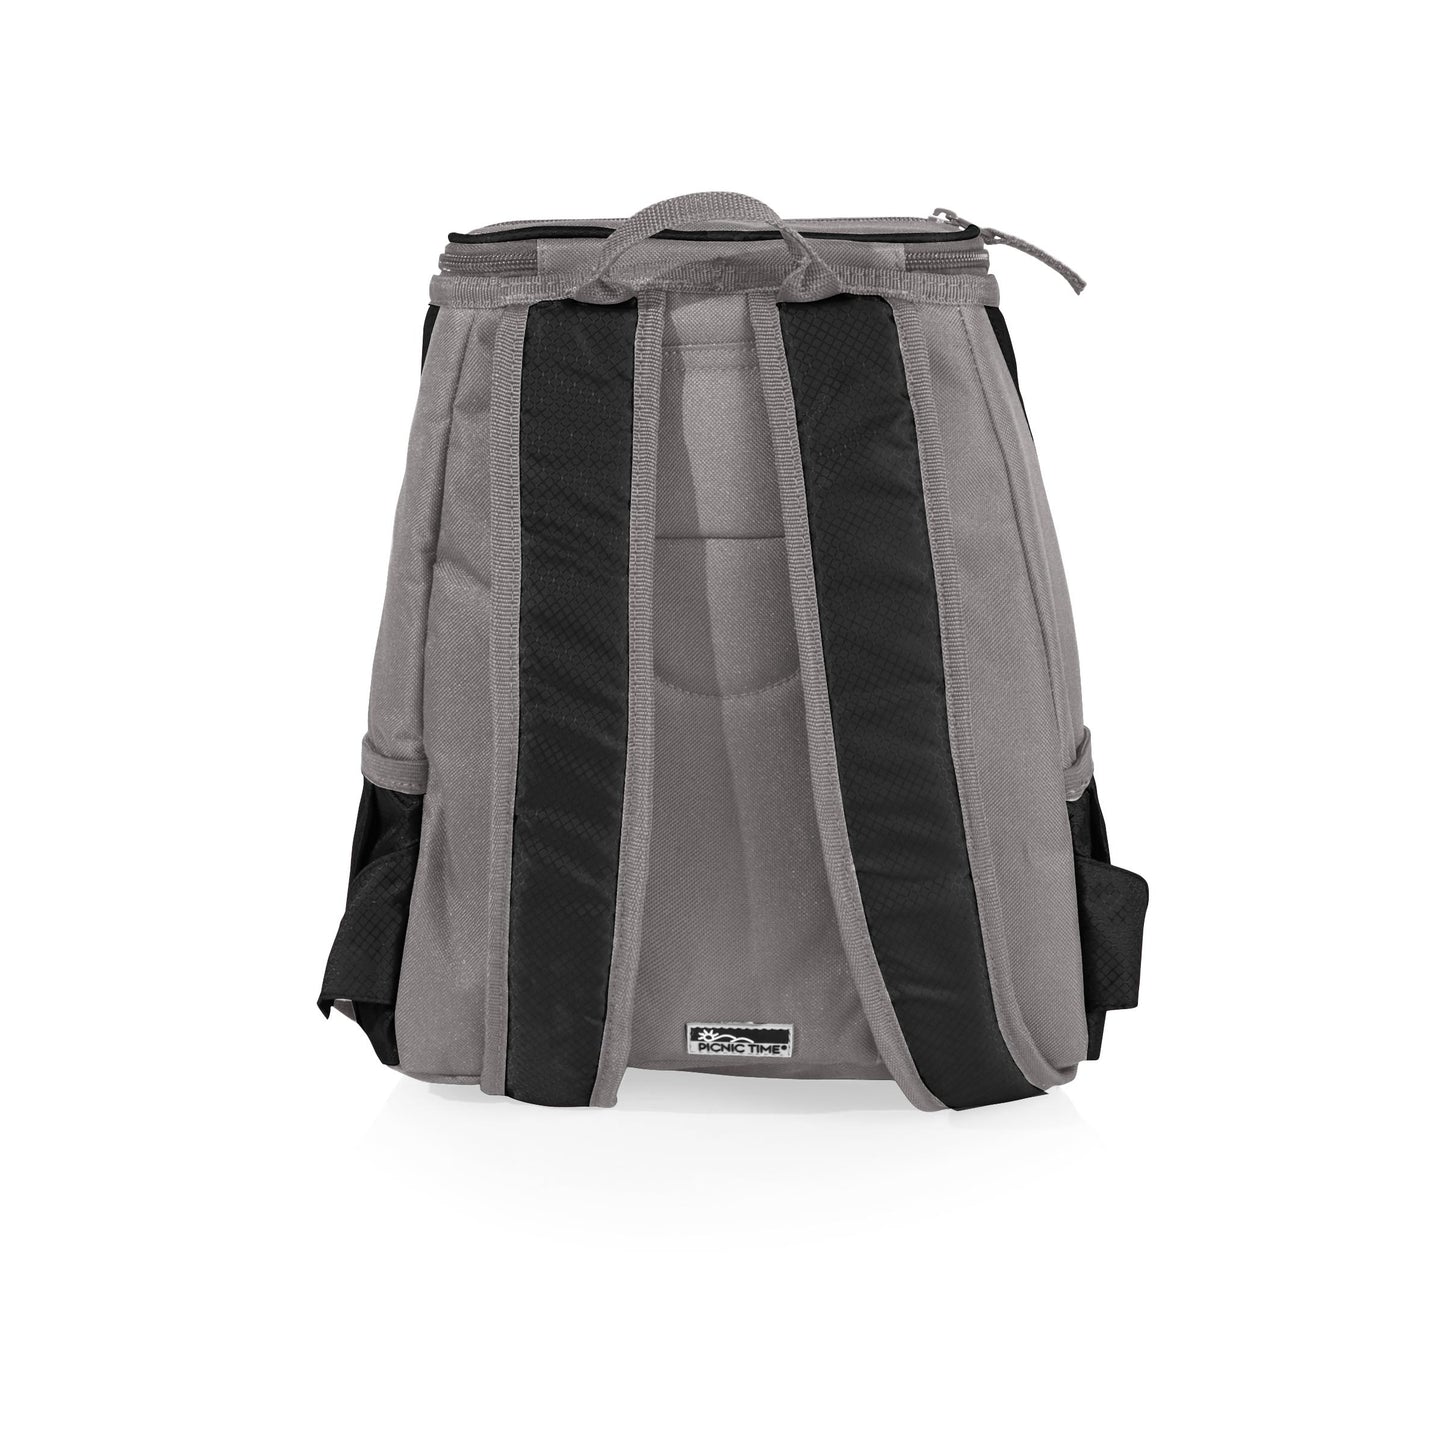 Cleveland Browns - PTX Backpack Cooler